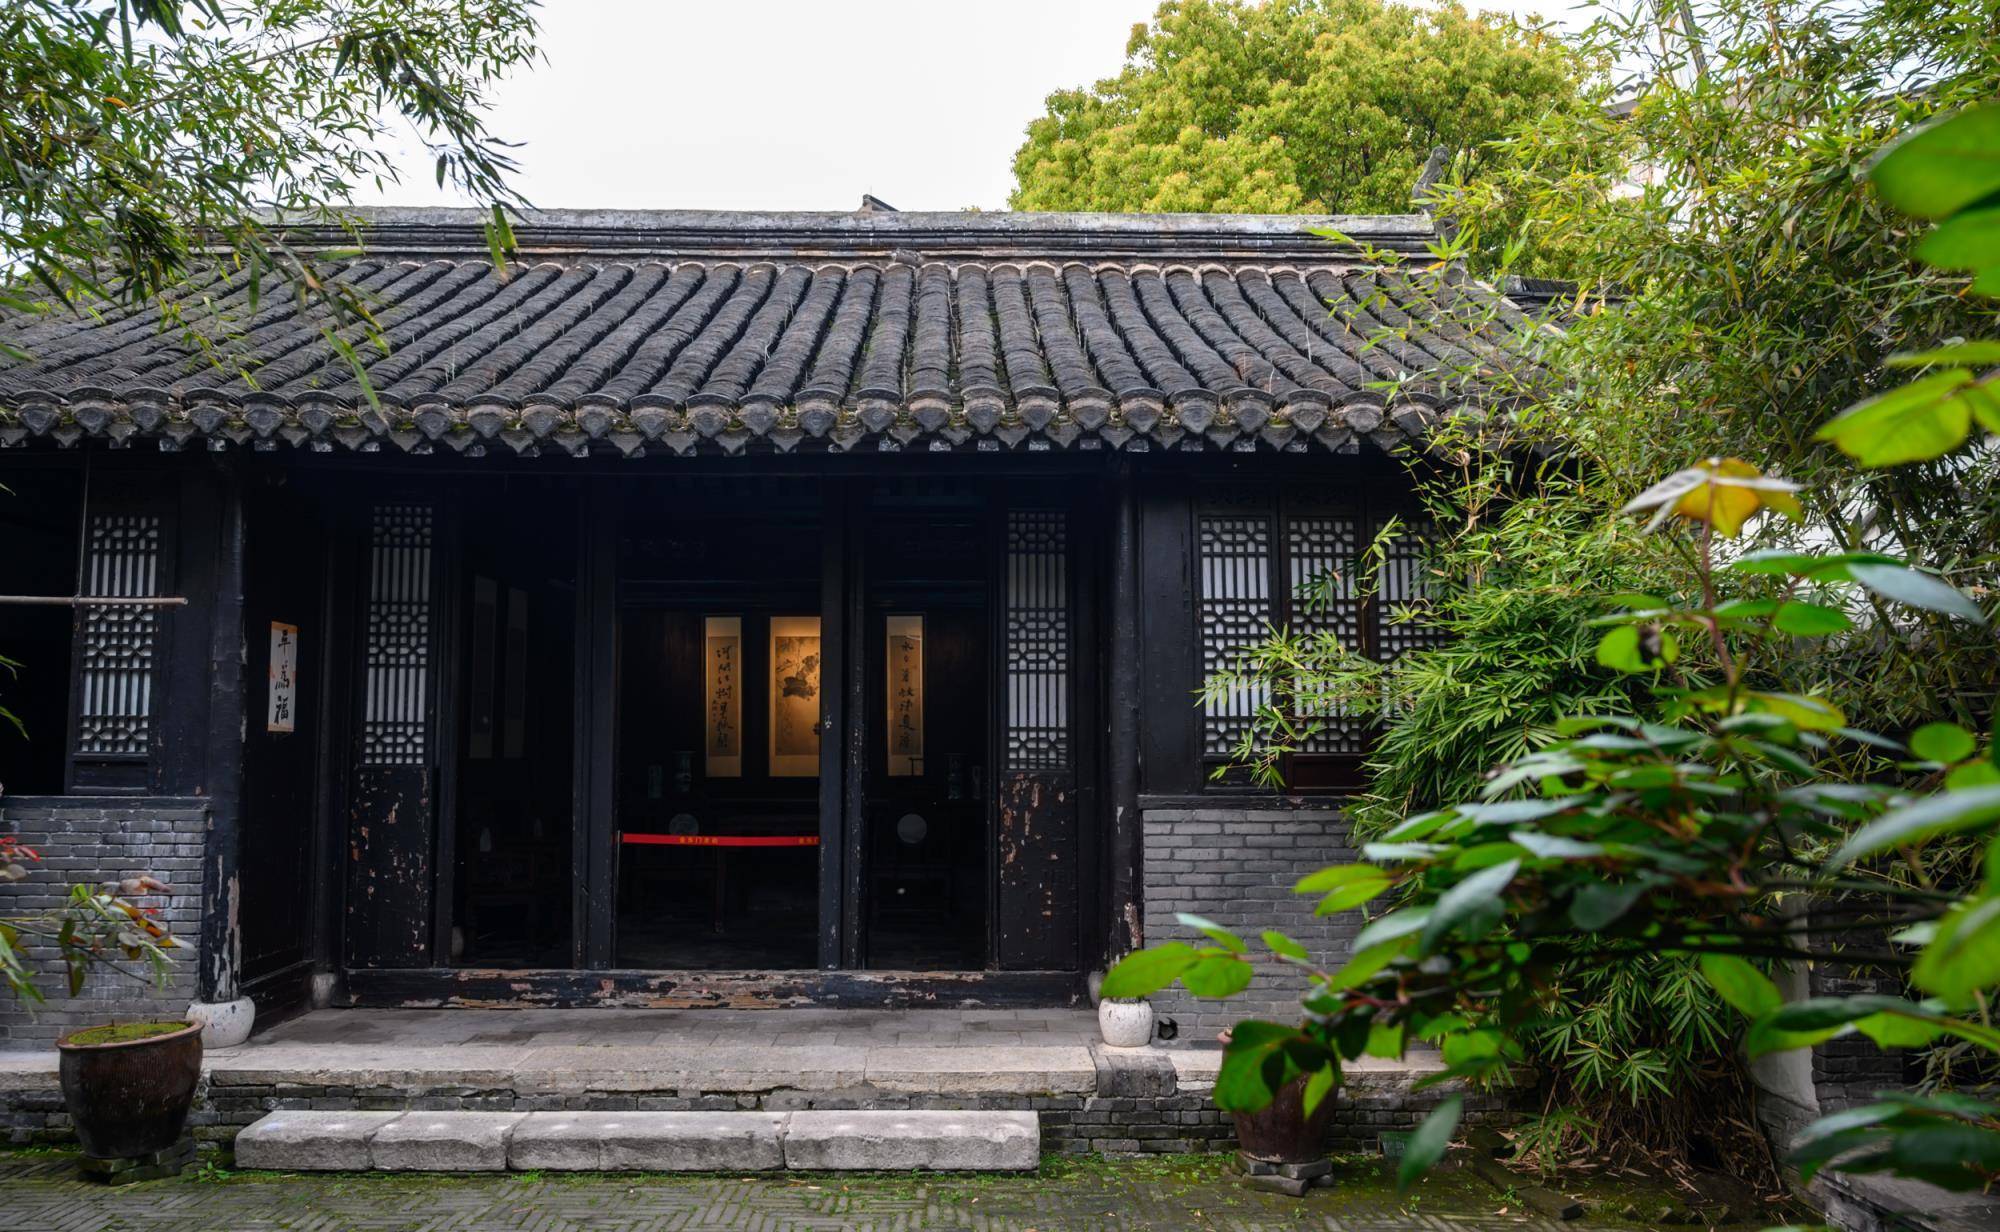 江苏兴化最著名的名人故居，隐藏在闹市中，规模不大仅8间房屋